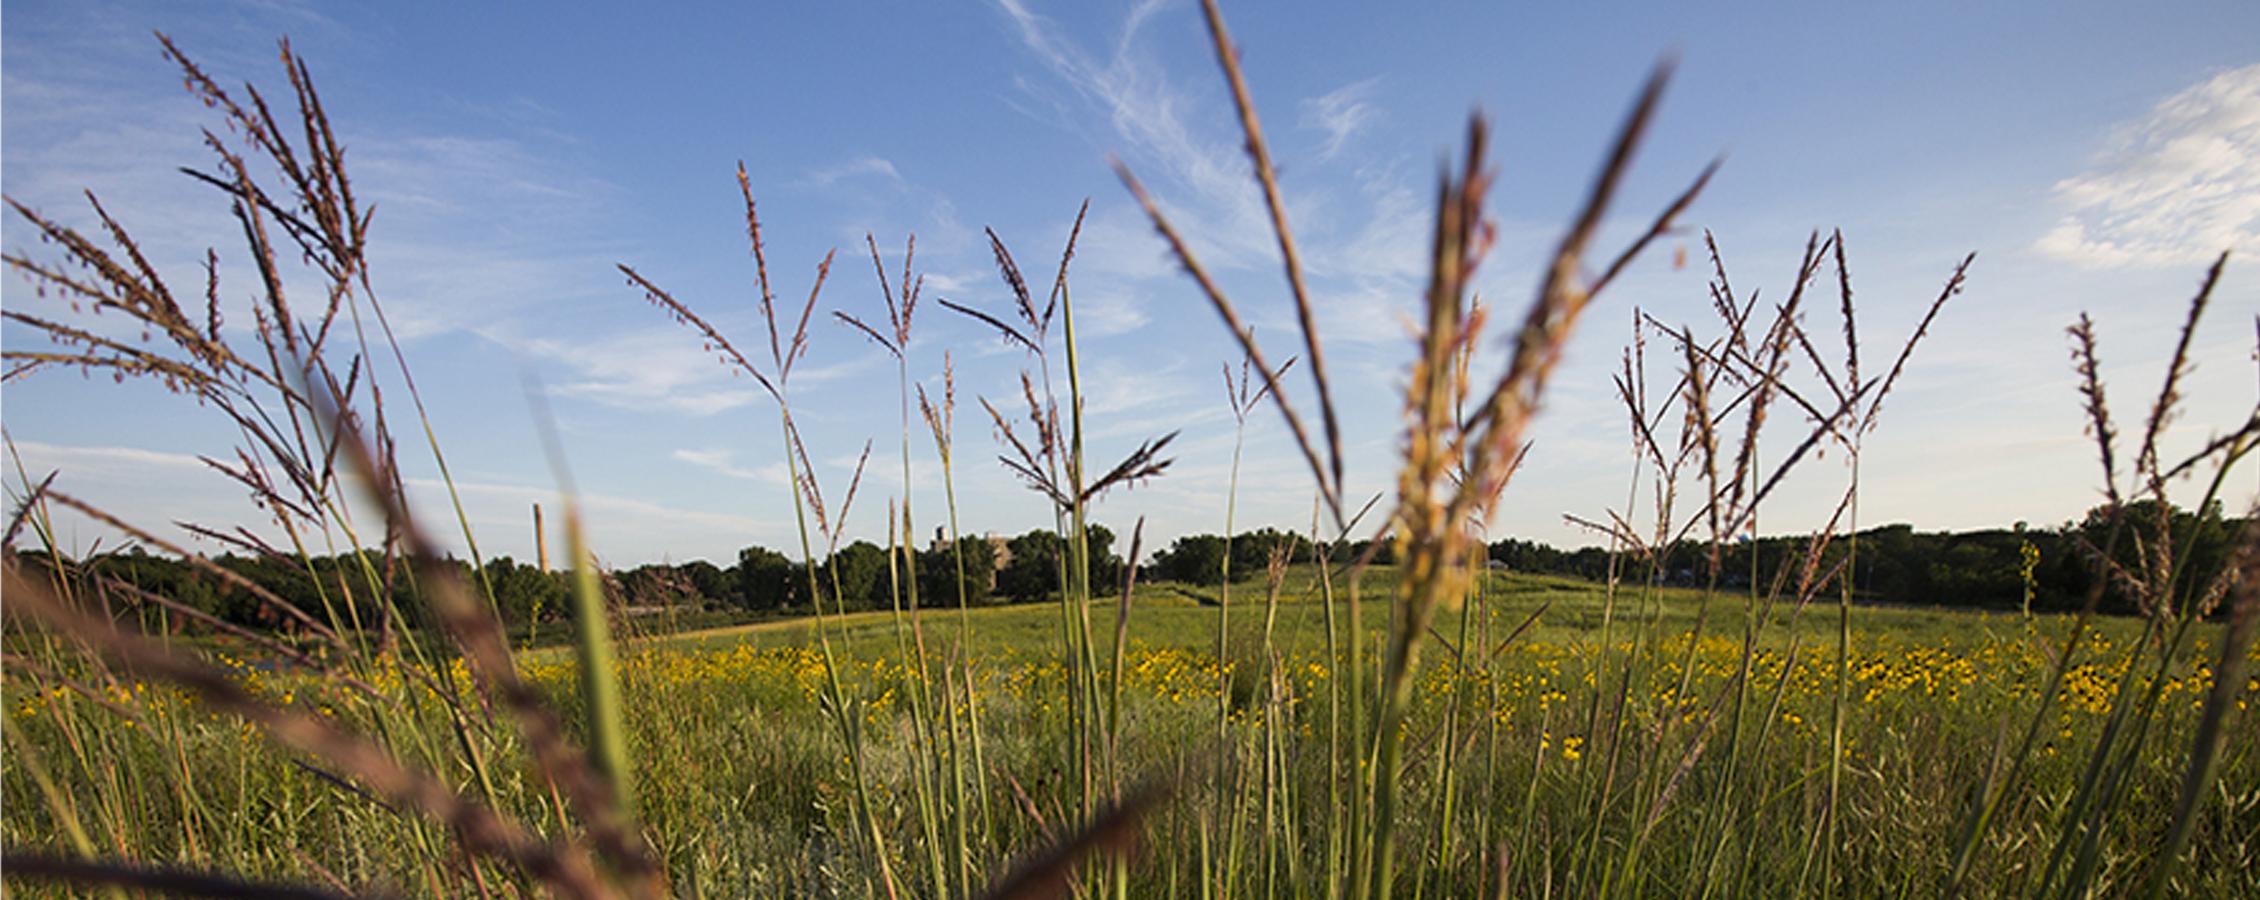 Prairie grasses against a blue sky.